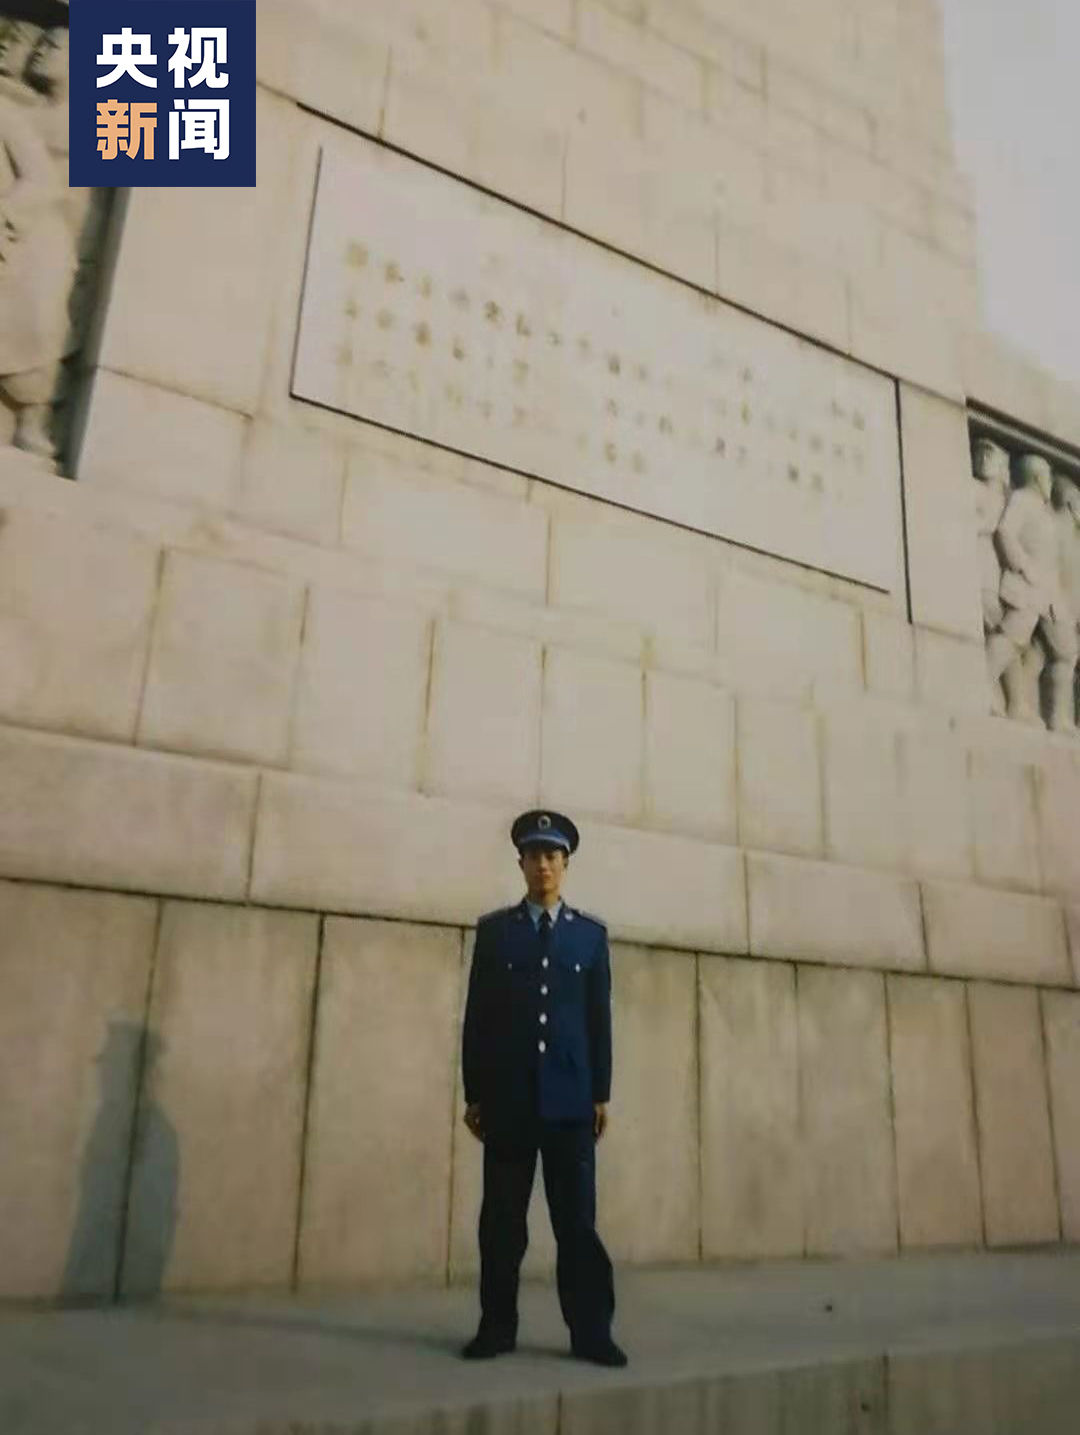 △余哲明2008年拍摄的军装照